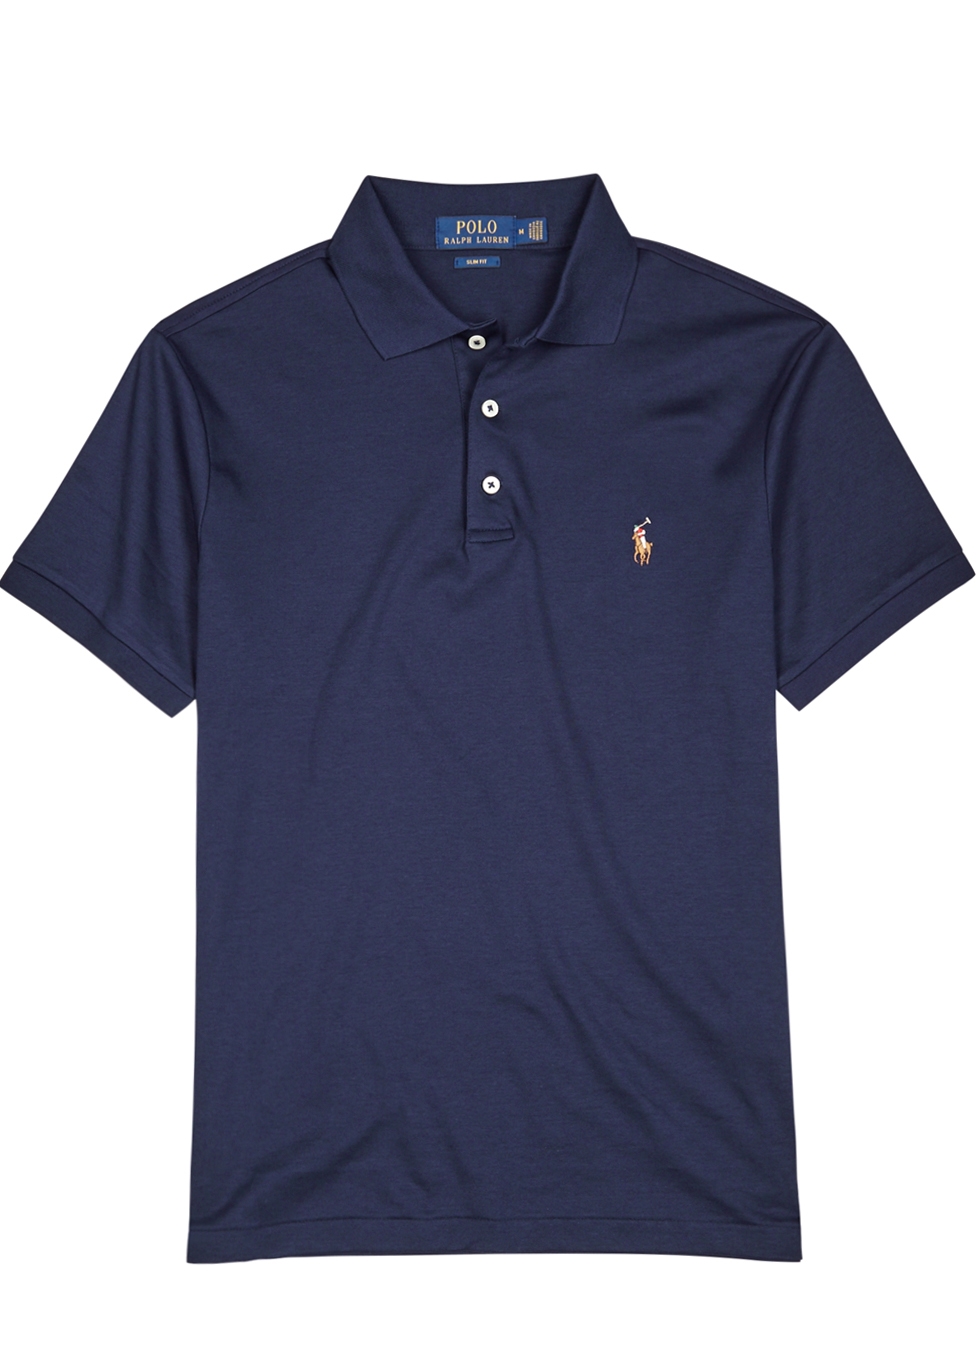 navy blue ralph lauren polo shirt